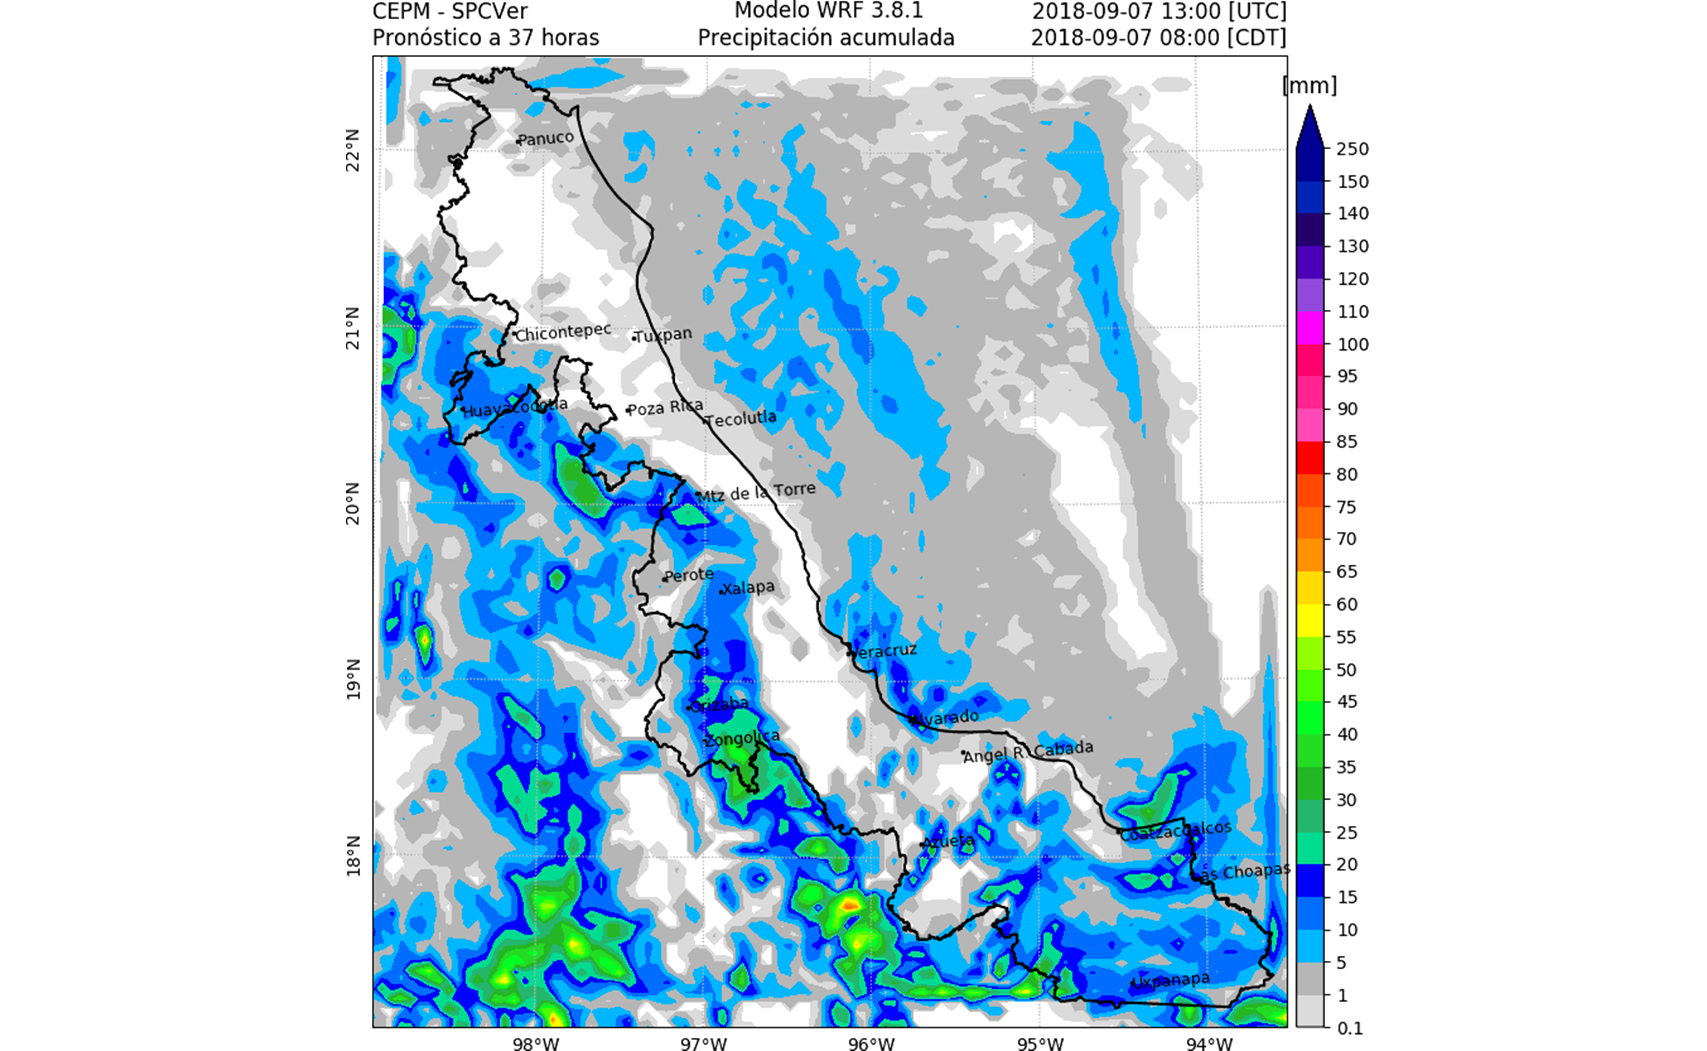 Pronostican mañana y noche lluviosa en Veracruz